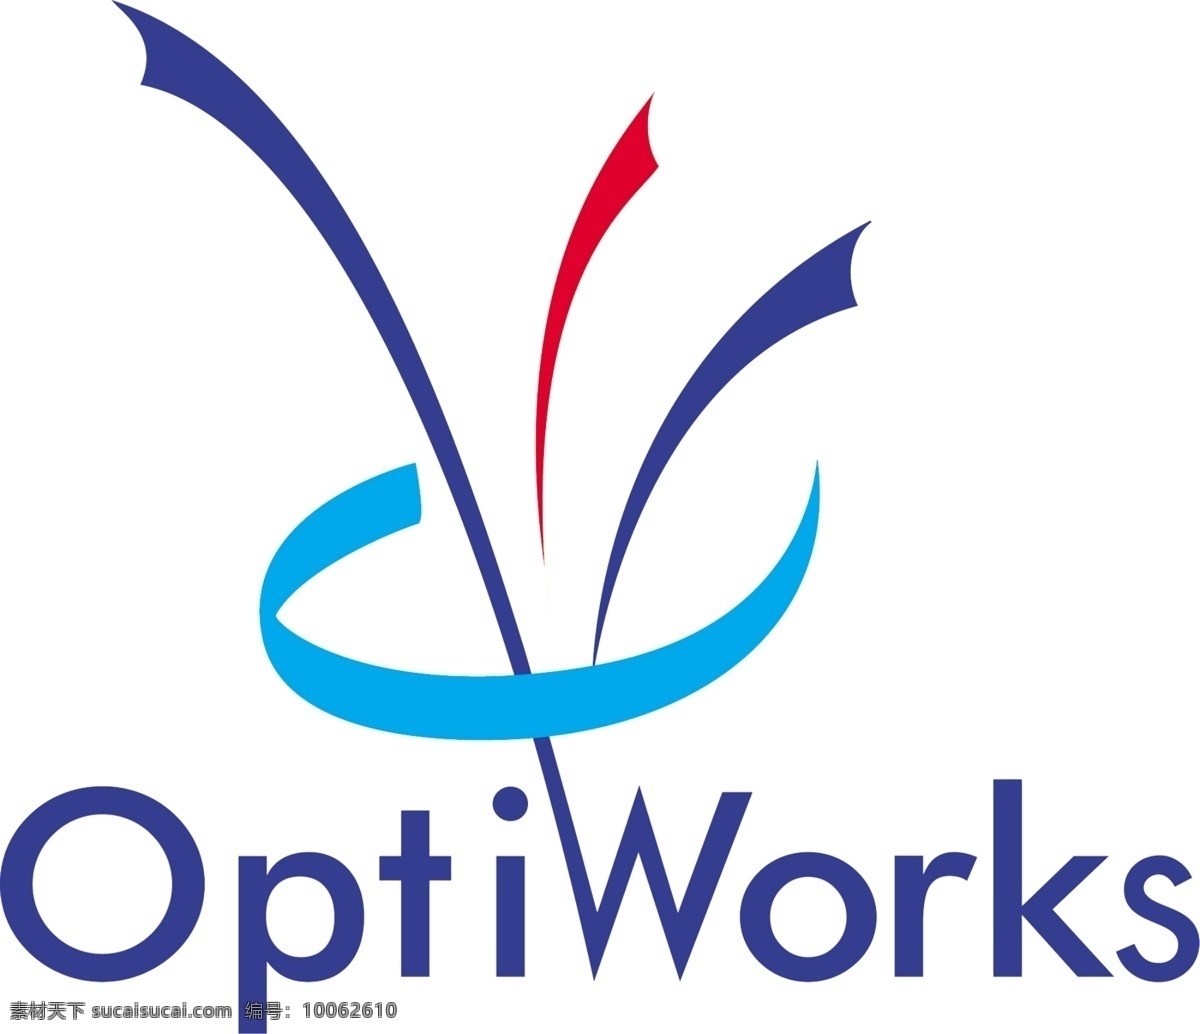 optiworks 翔 光 翔光 翔光标志 翔光logo 线束 连接器 太阳能 连接线 烟花 新能源 logo设计